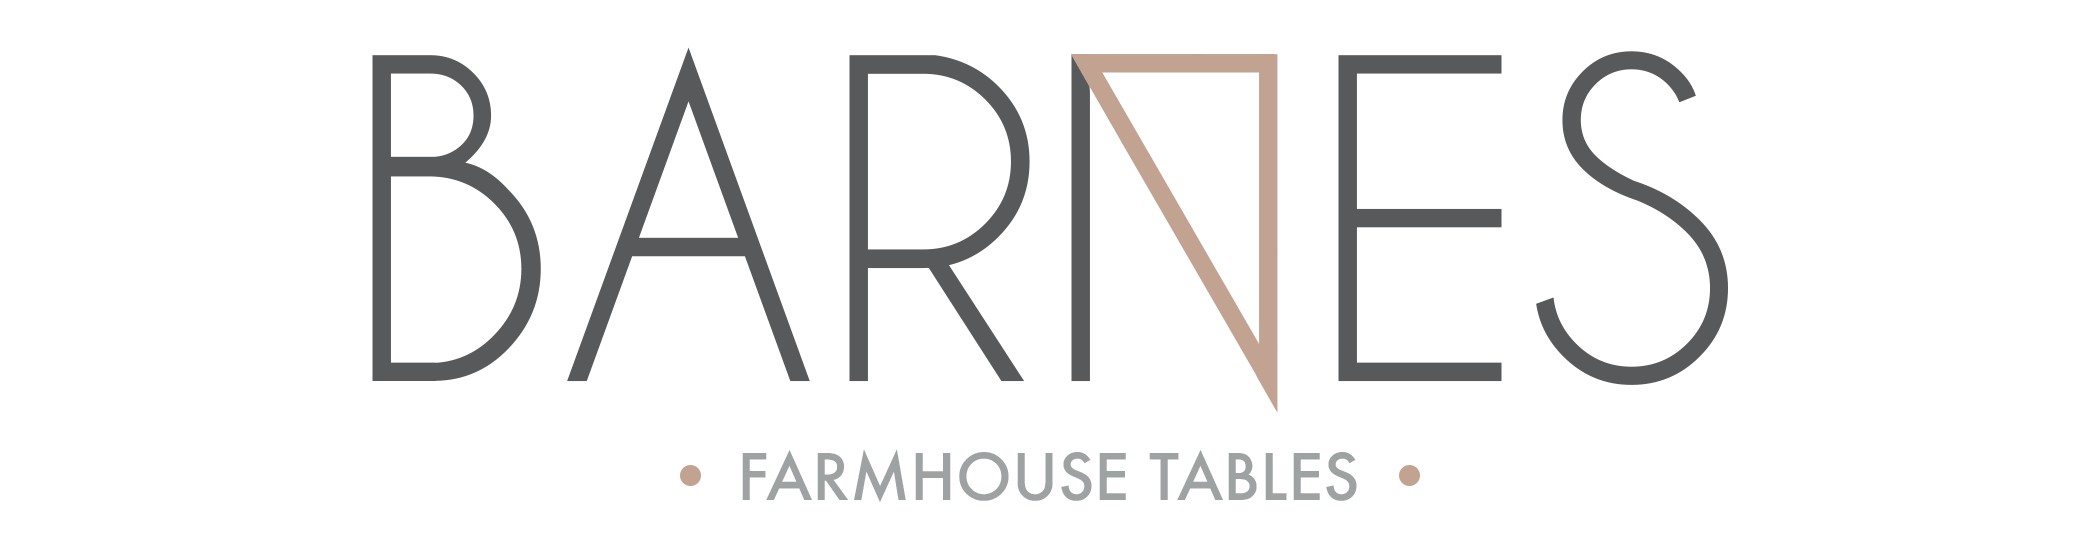 Barnes Farmhouse Tables